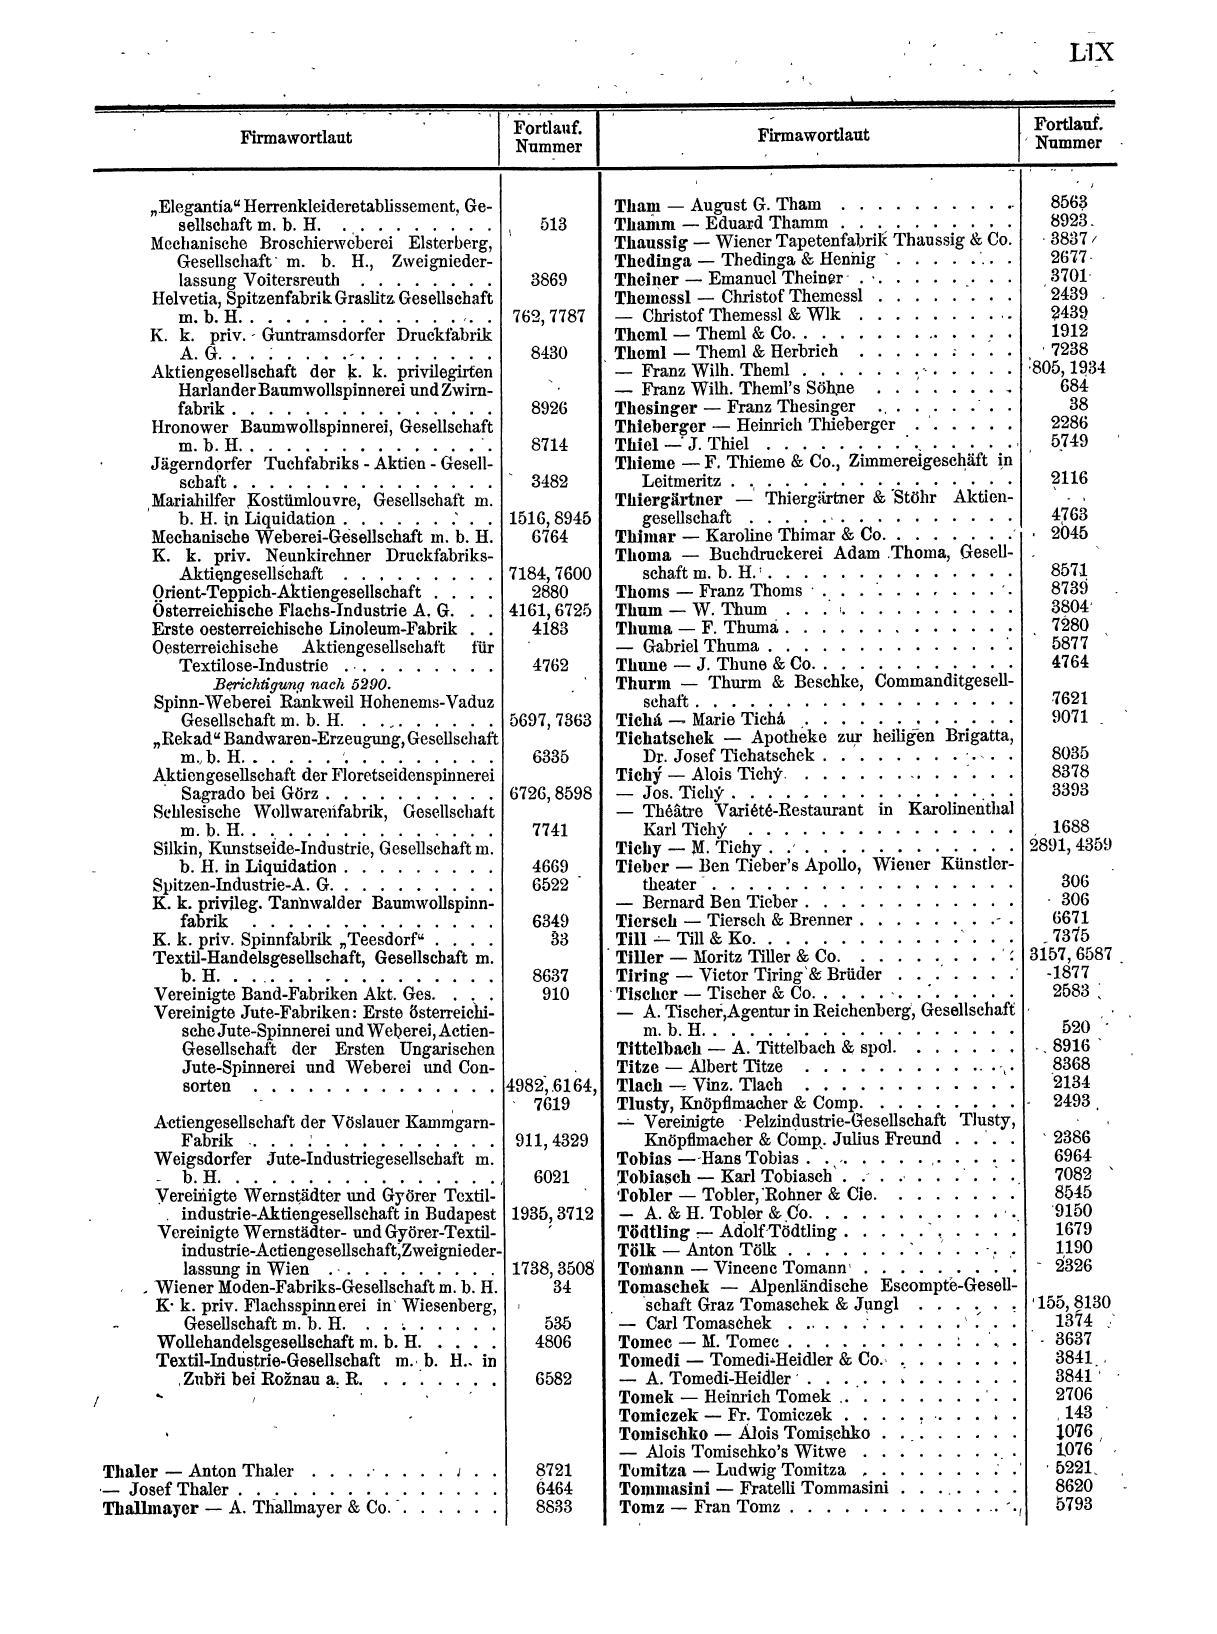 Zentralblatt für die Eintragungen in das Handelsregister 1913, Teil 1 - Seite 67